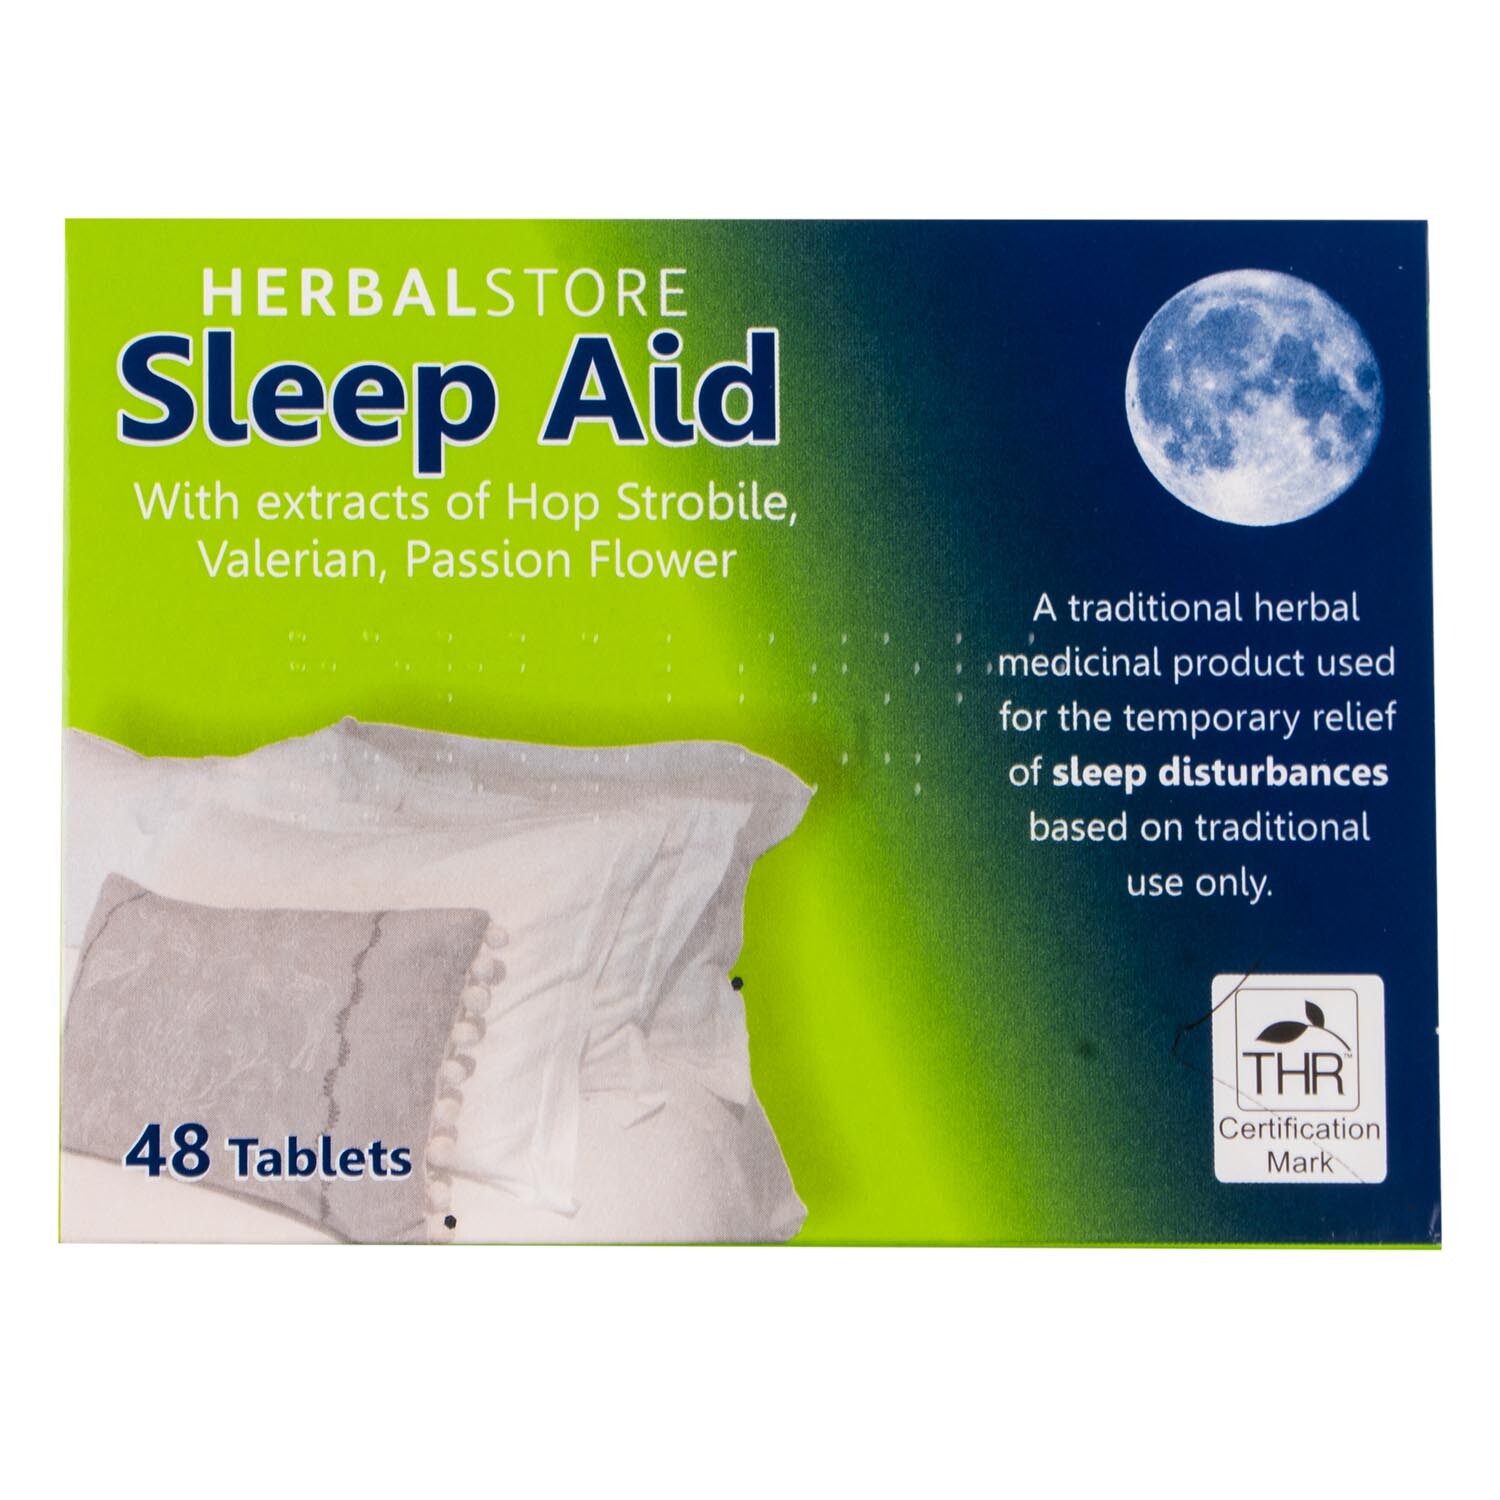 Herbal Store Sleep Aid Tablets 48 Pack Image